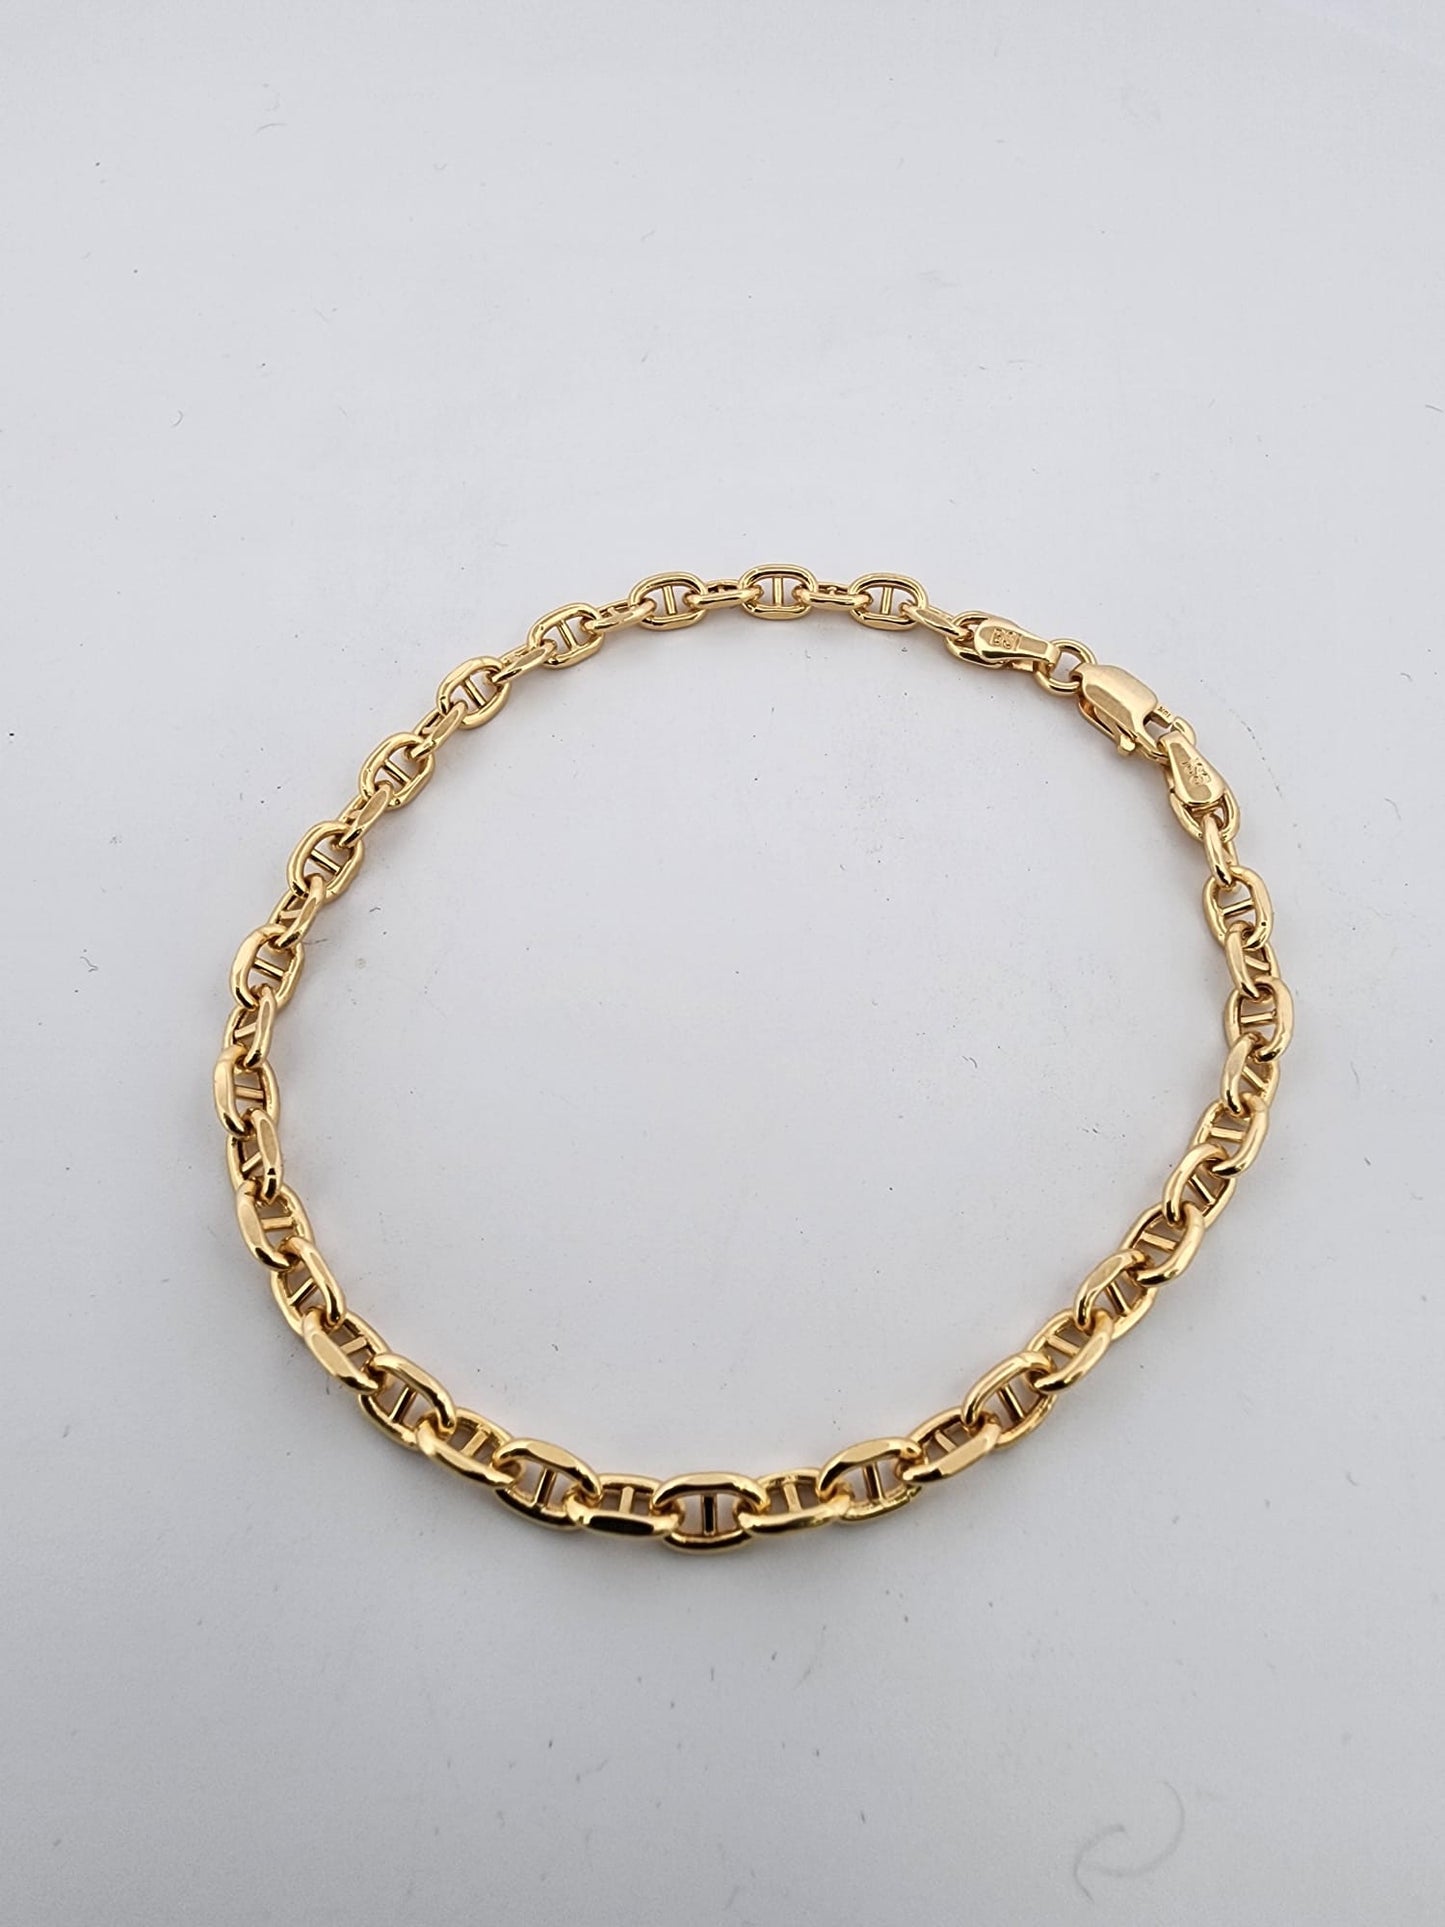 Gucci women's bracelet 18K